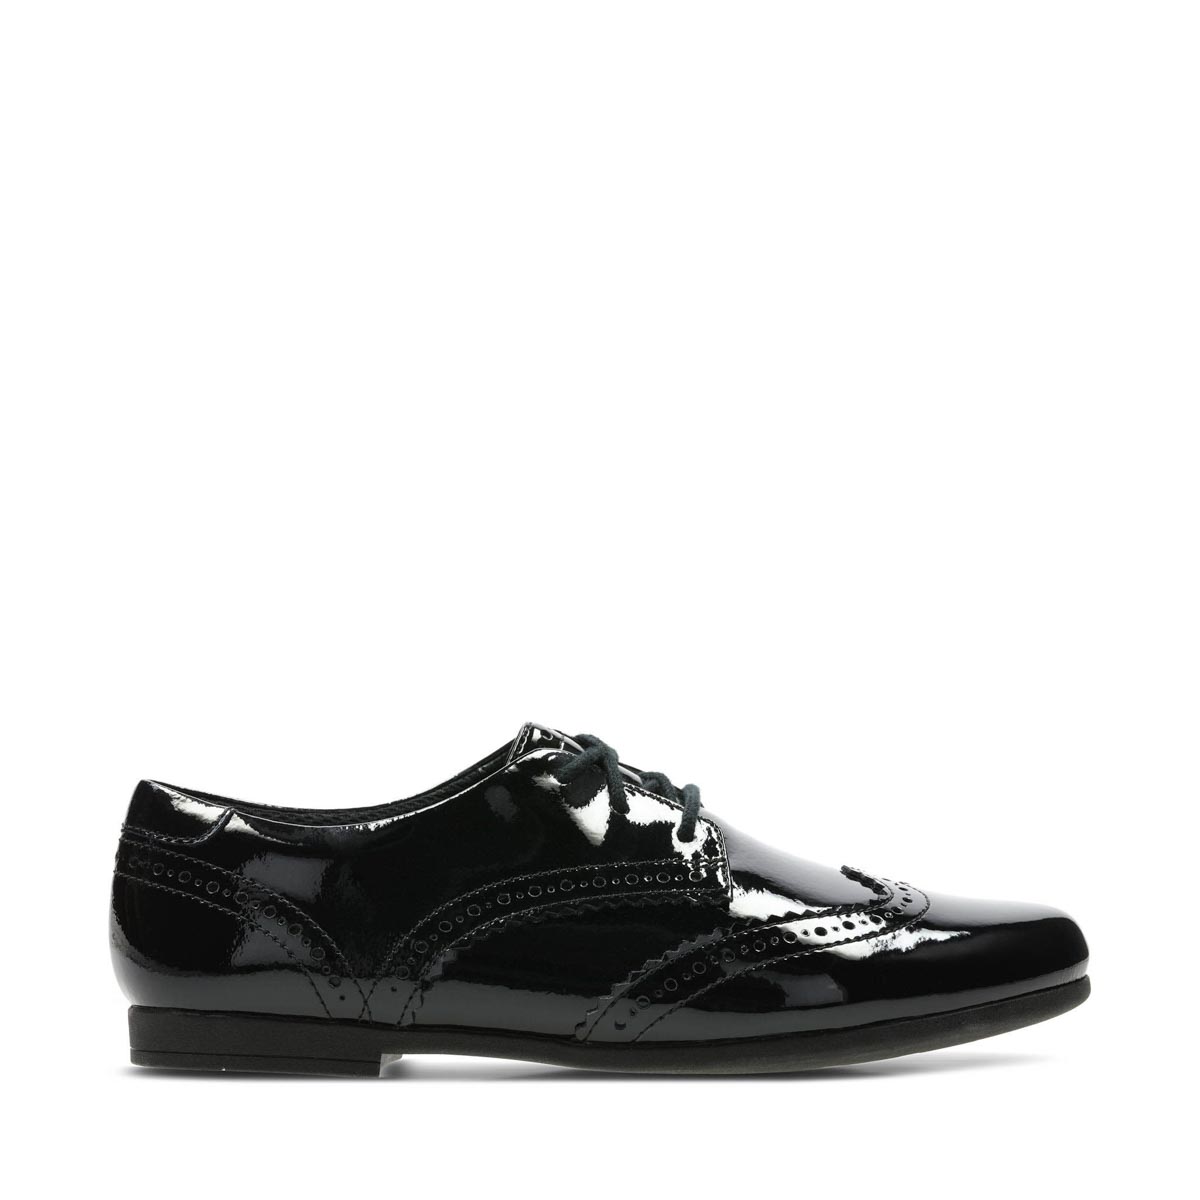 clarks black patent school shoes